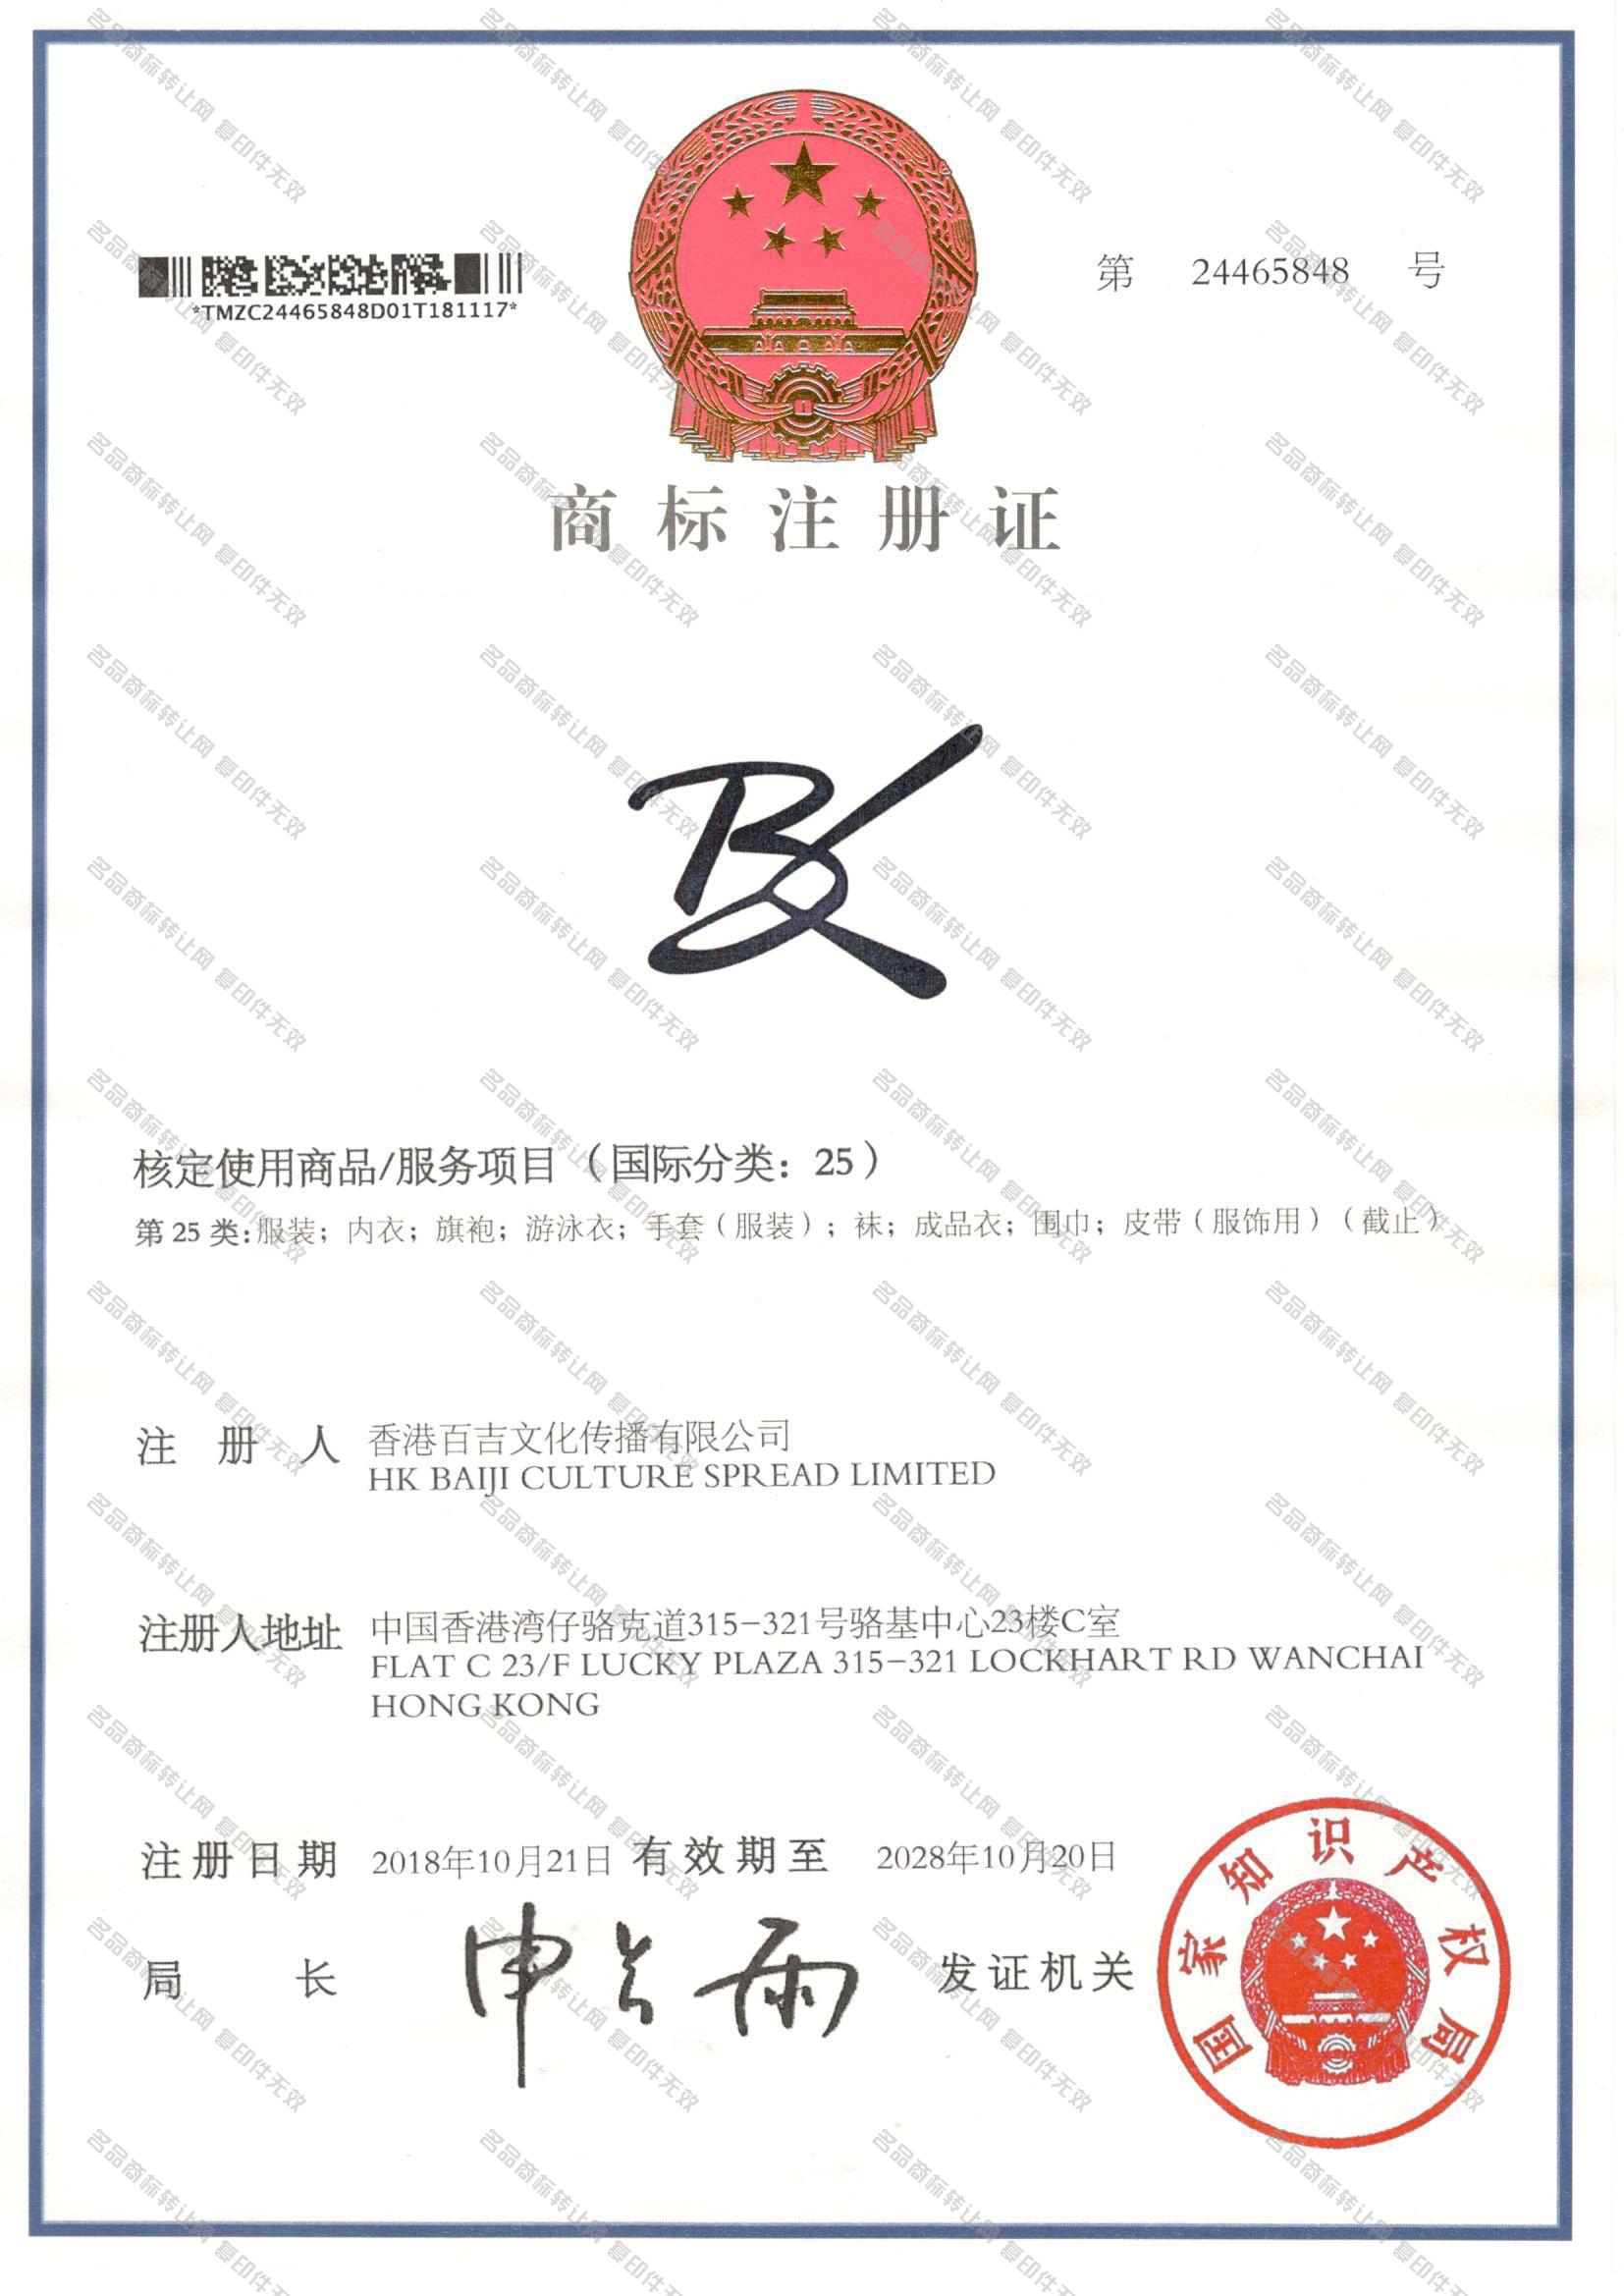 BK图形注册证